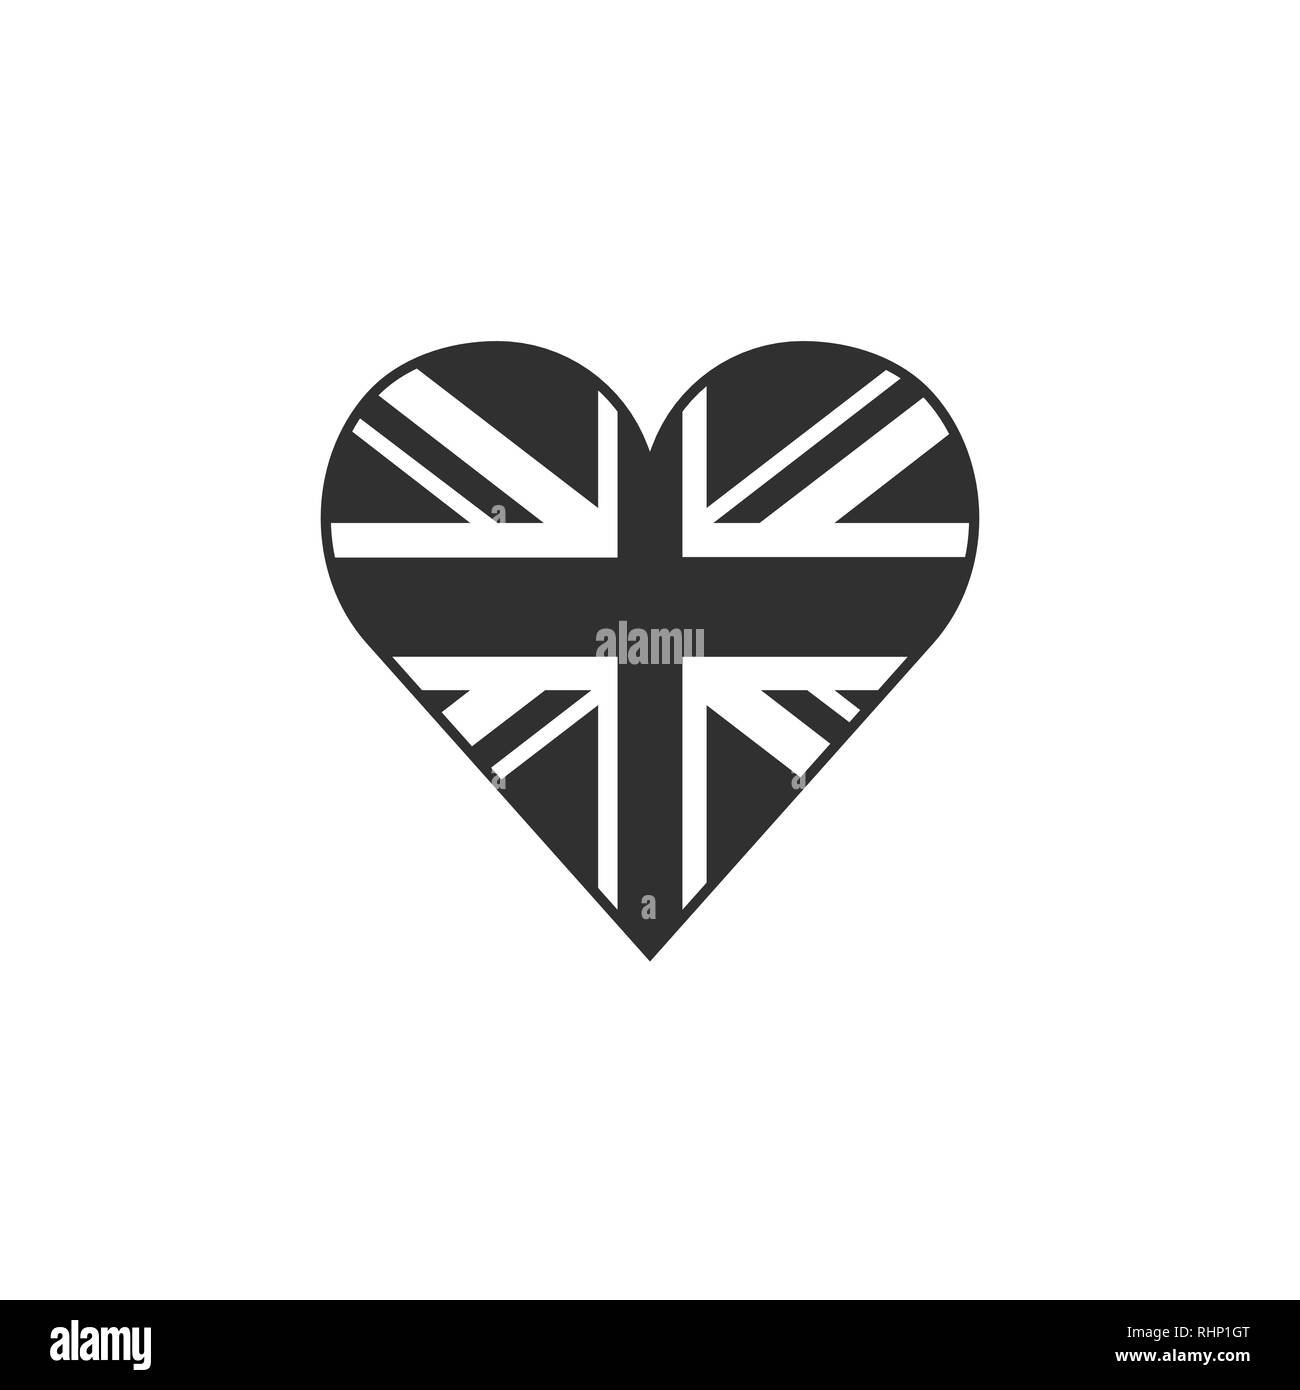 Großbritannien Flagge Symbol in Form eines Herzens in schwarzer Umriss flache Bauform. Tag der Unabhängigkeit oder der nationalen Feiertag Konzept. Stock Vektor